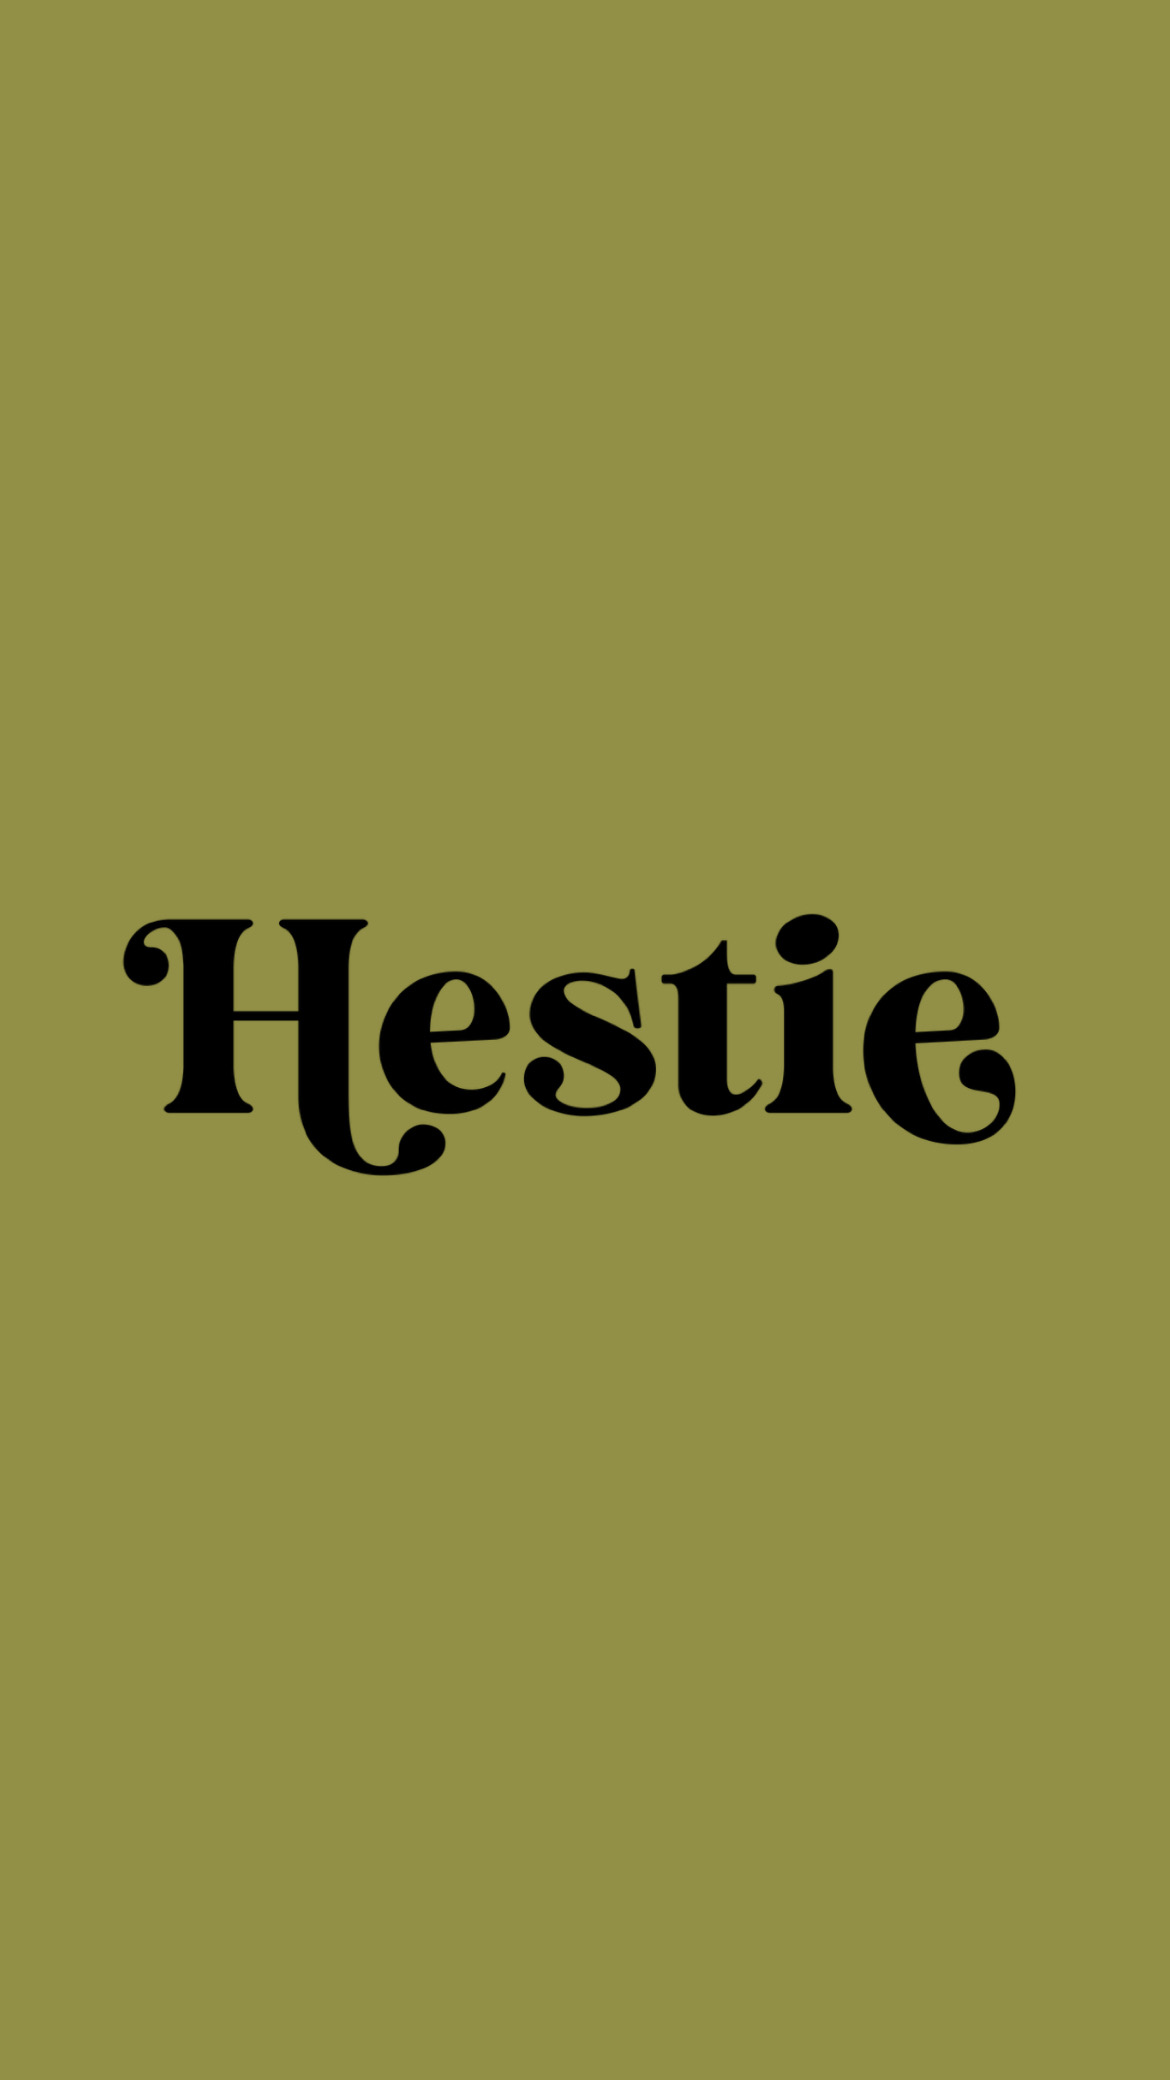 Hestie